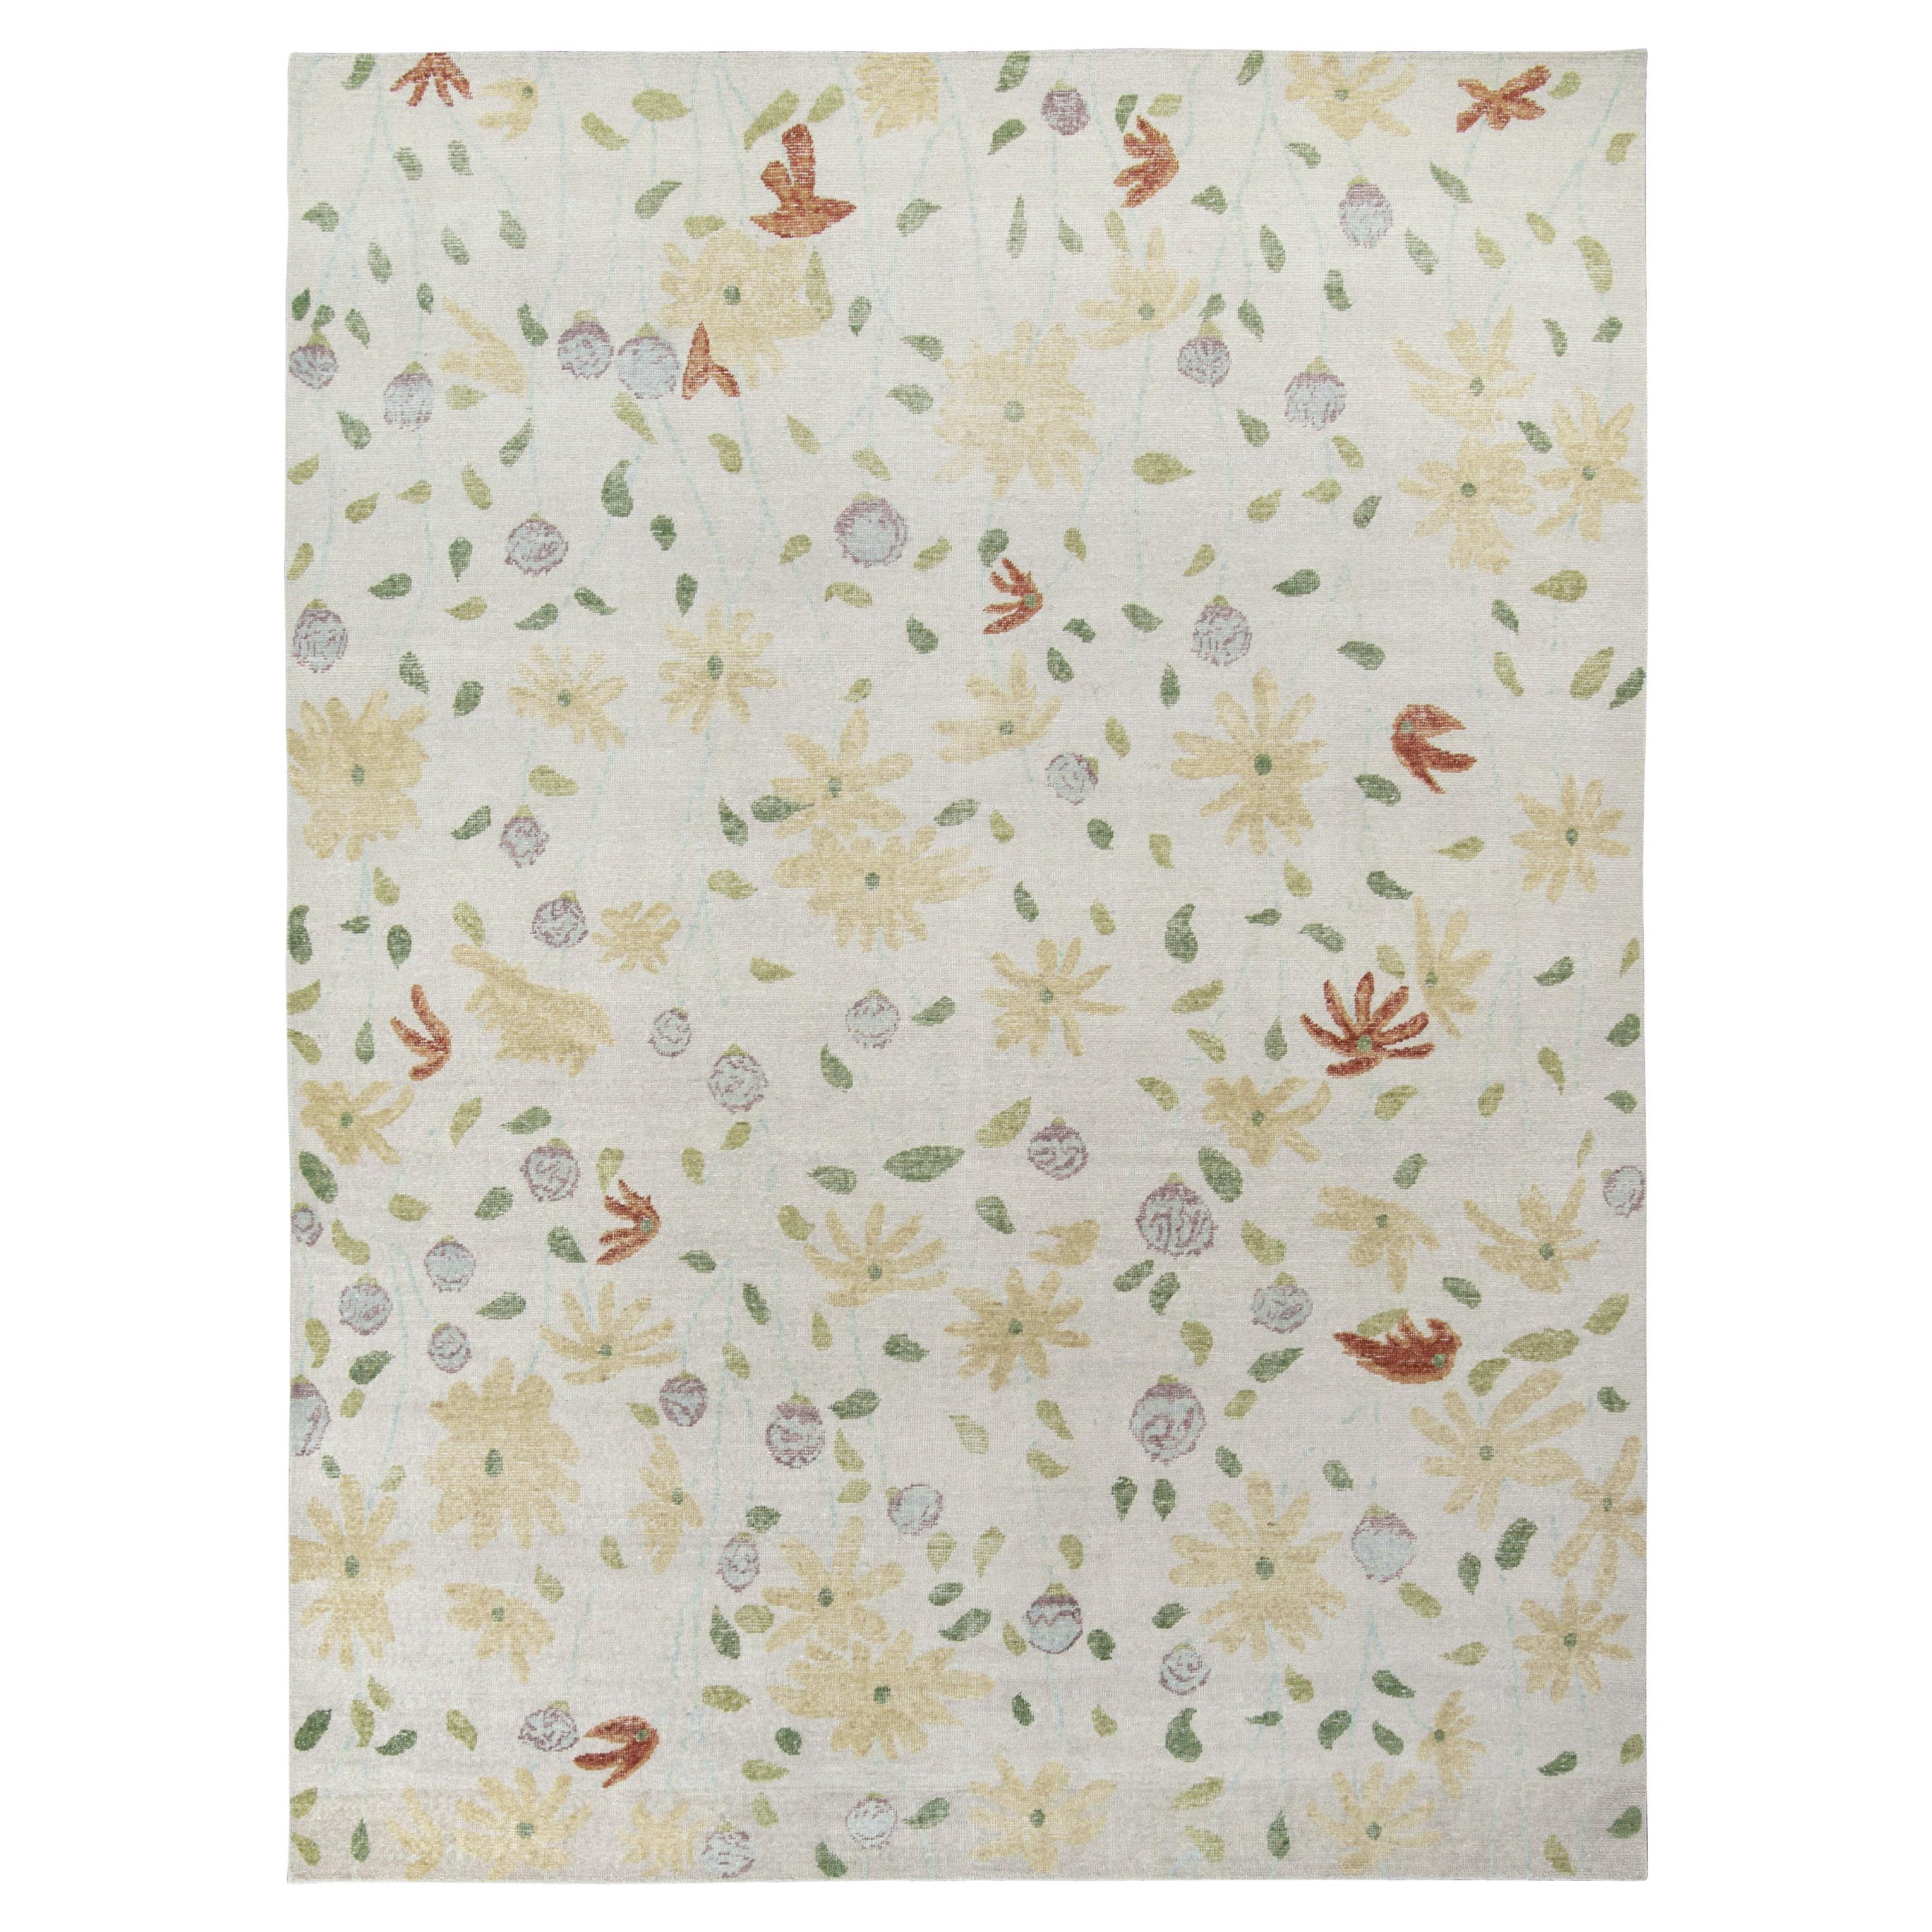 Rug & Kilim's Distressed Contemporary Rug in White with Beige Floral Patterns (tapis contemporain vieilli en blanc avec des motifs floraux en beige)